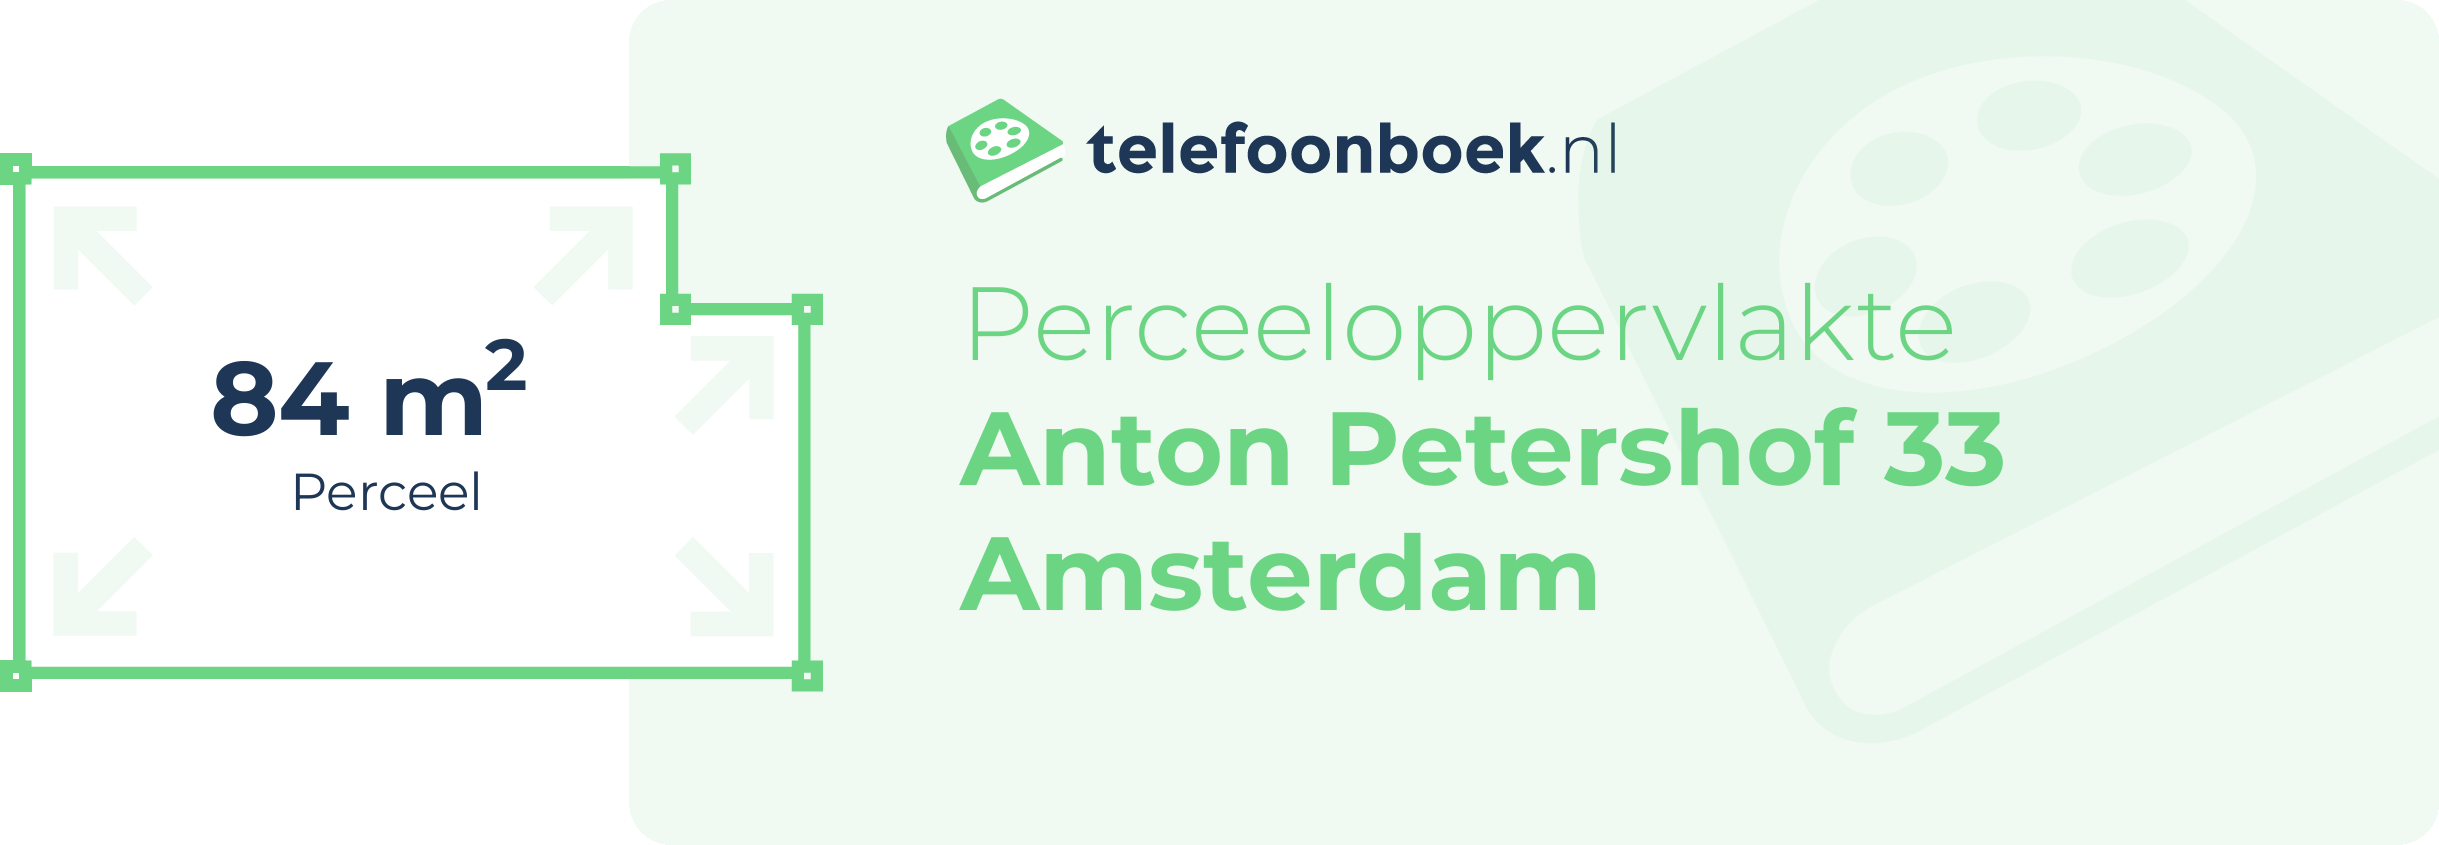 Perceeloppervlakte Anton Petershof 33 Amsterdam